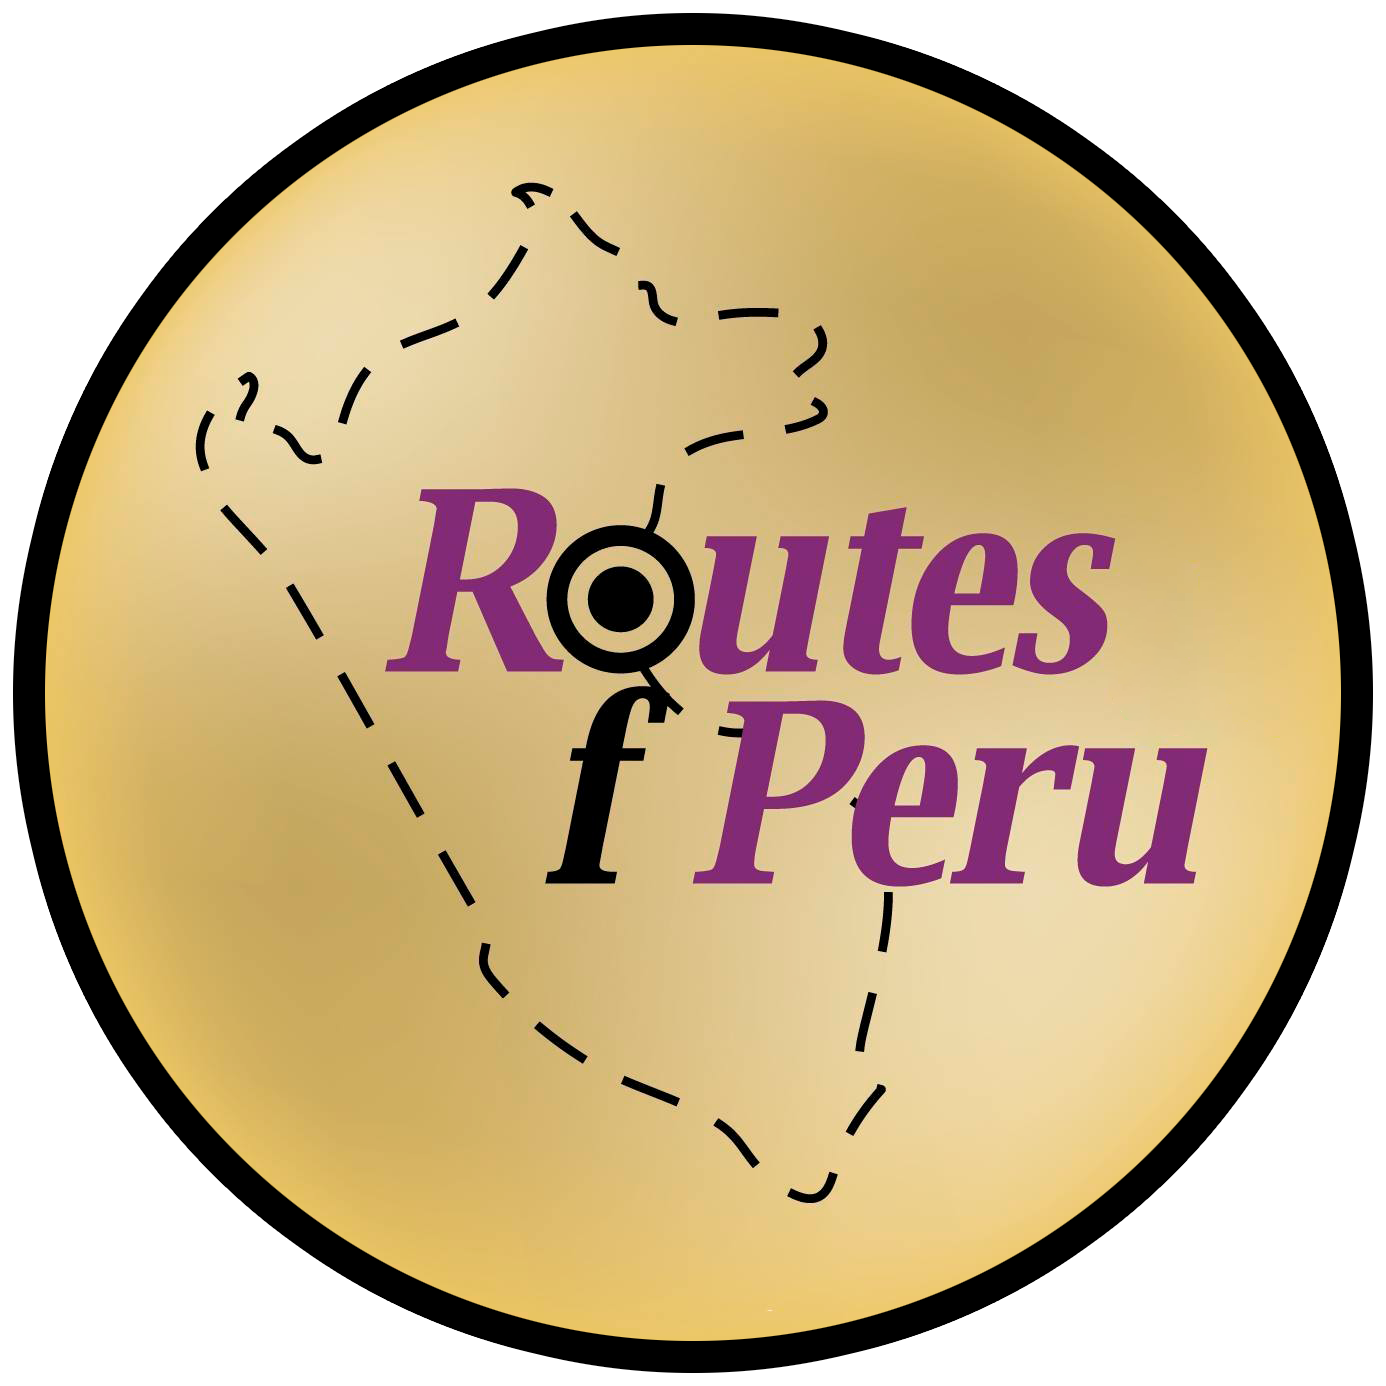 Routes of Peru logo